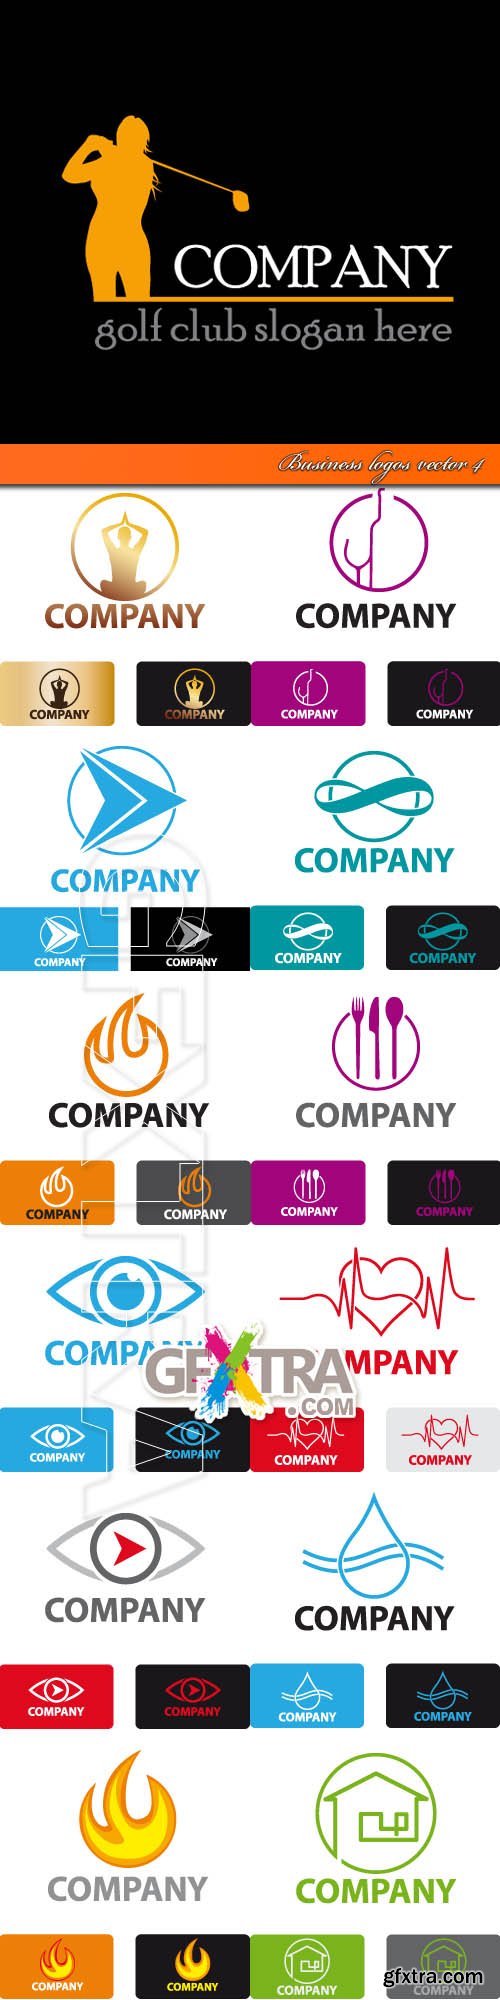 Business logos vector 4